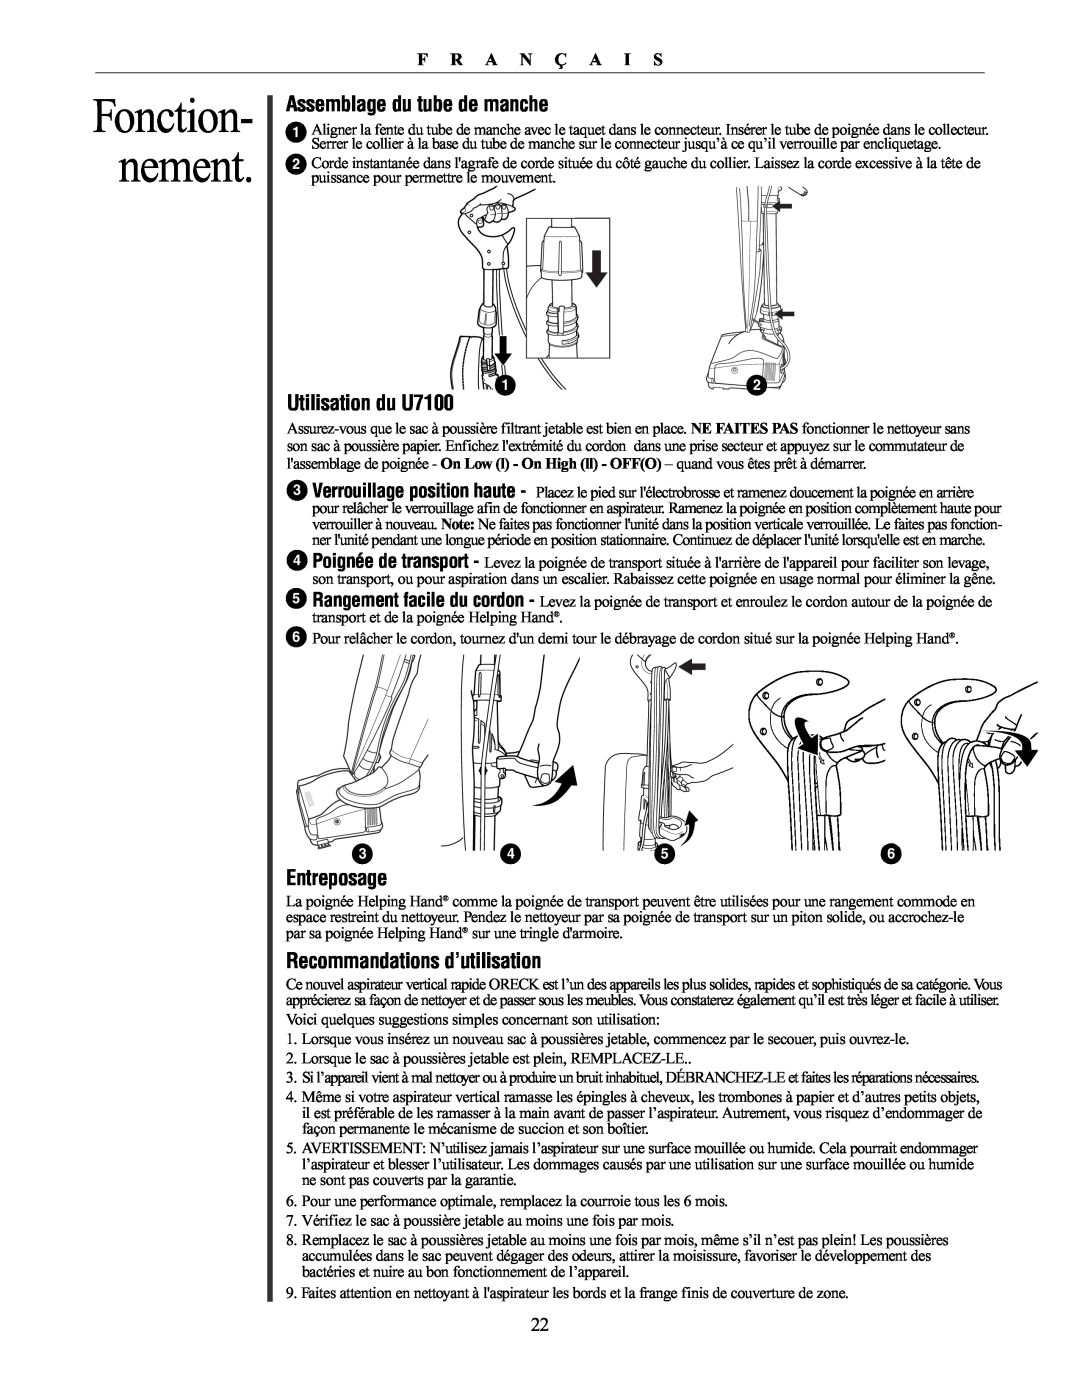 Oreck 79030-01REVA manual Assemblage du tube de manche, Utilisation du U7100, Entreposage, Recommandations d’utilisation 